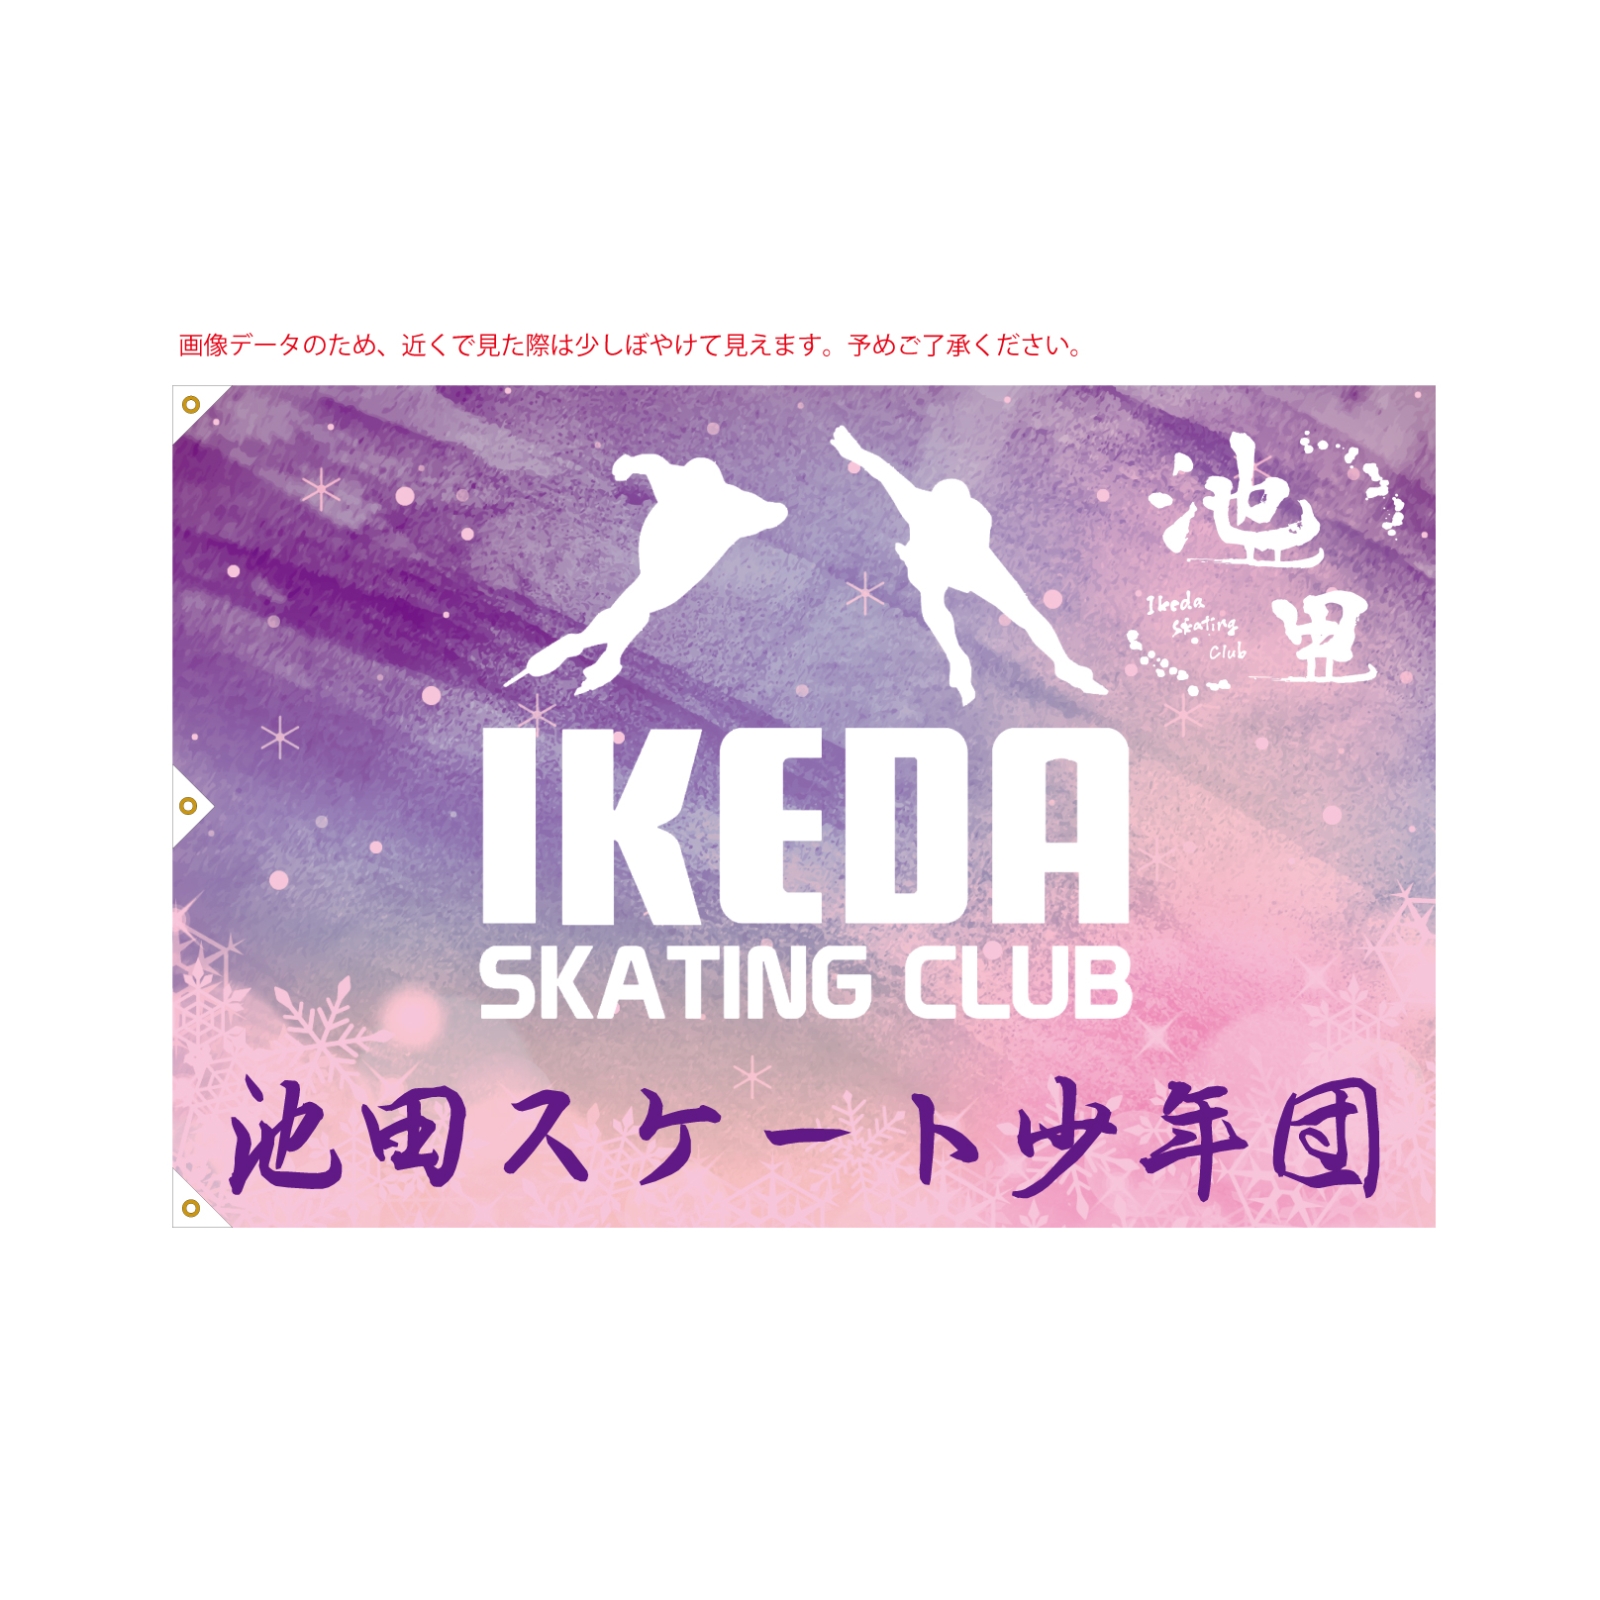 スケートクラブの旗